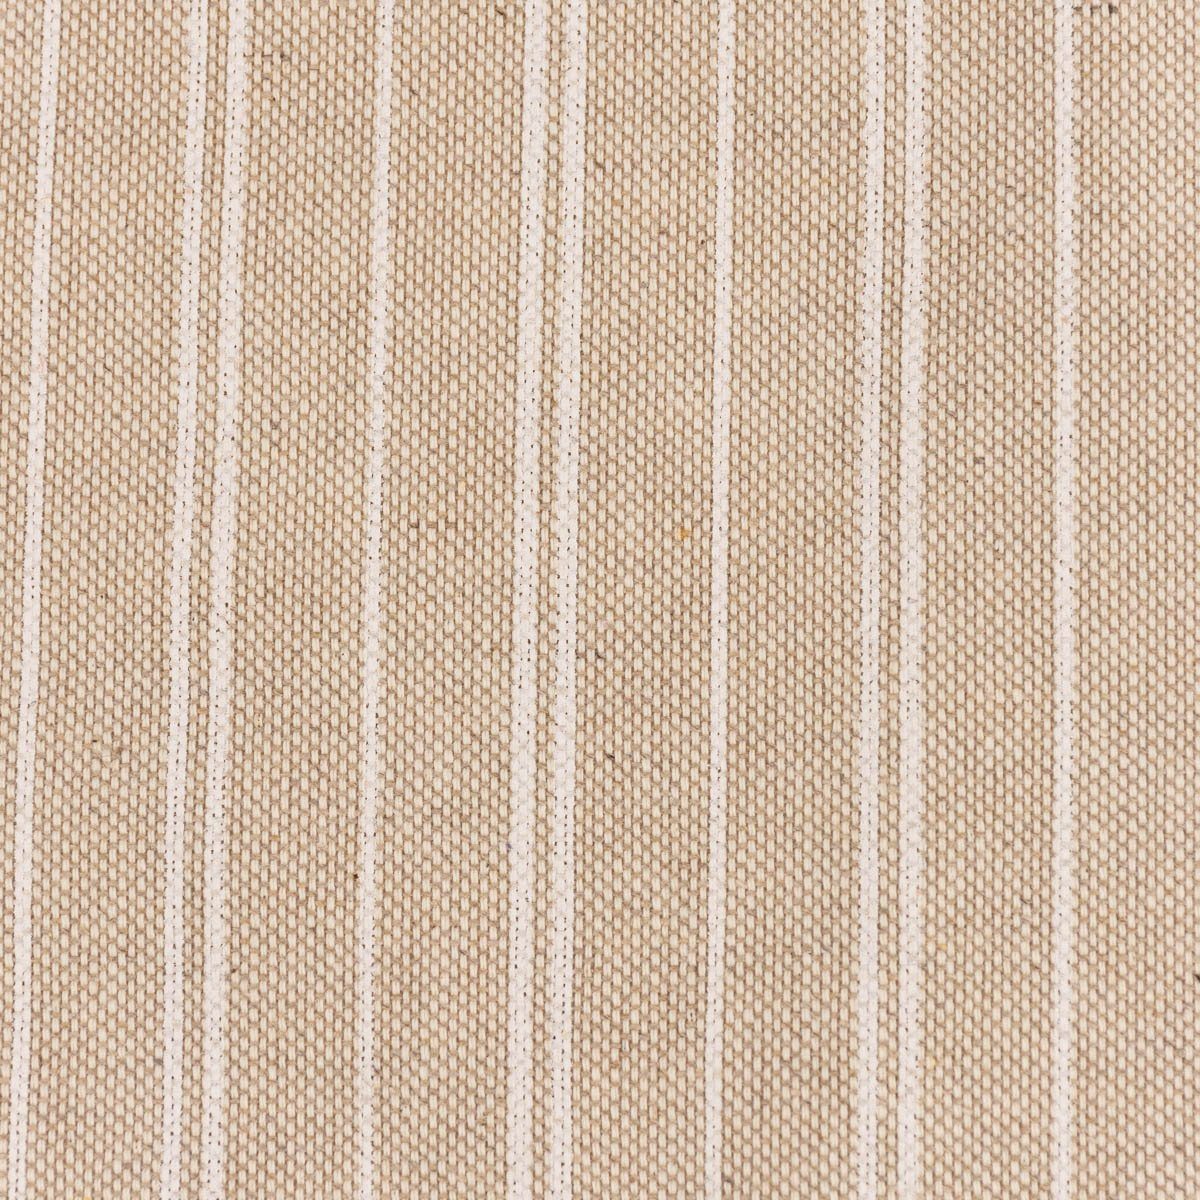 SCHÖNER LEBEN. Stoff Dekostoff Leinenlook Basic Stripe Streifen natur weiß 1,40m Breite, atmungsaktiv